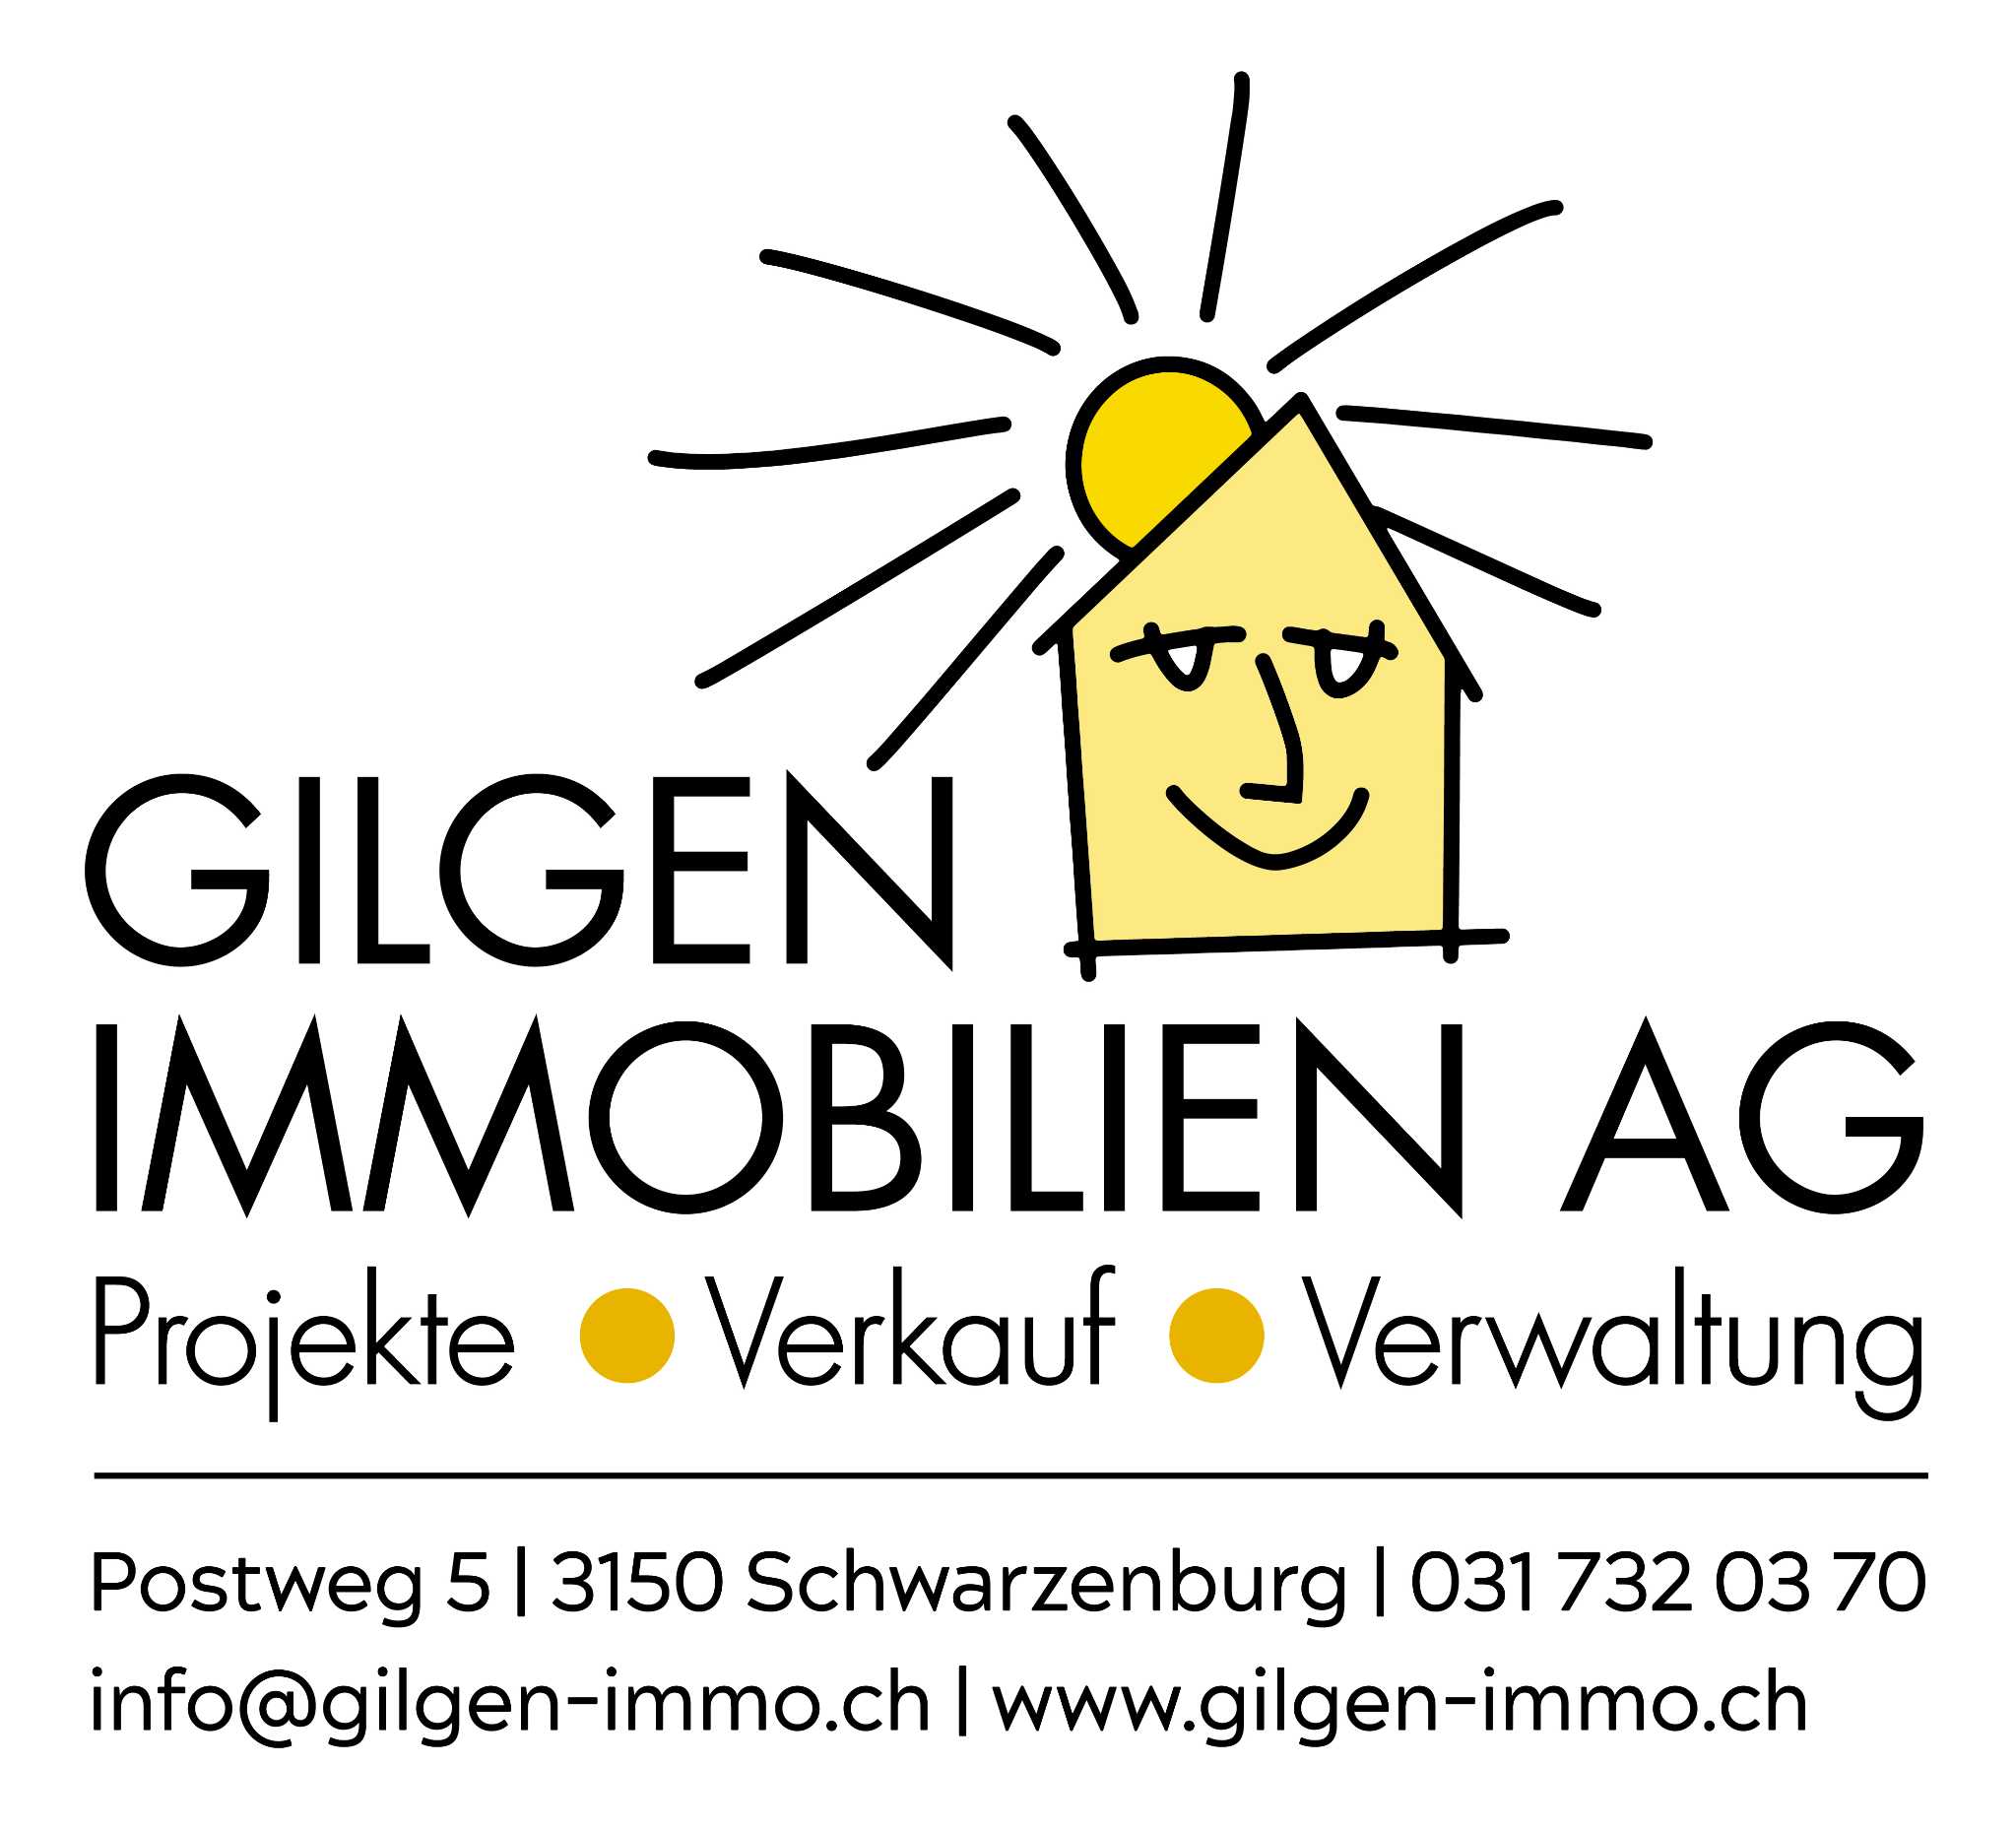 GILGEN IMMOBILIEN AG